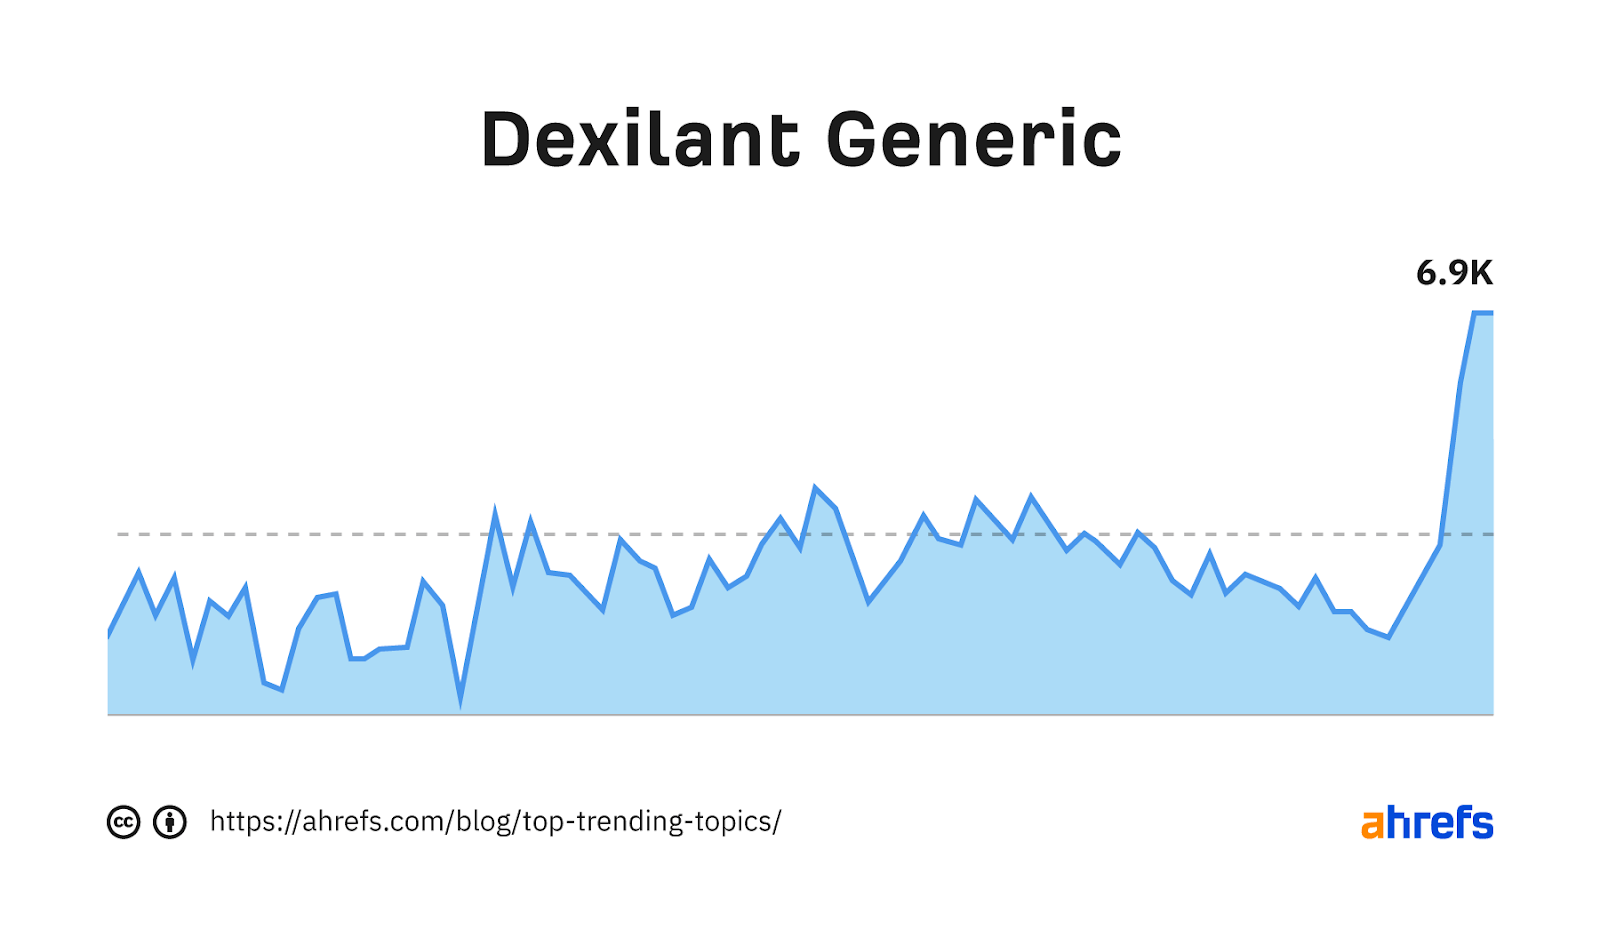 Gráfico de tendencia de la palabra clave "relajante generico"